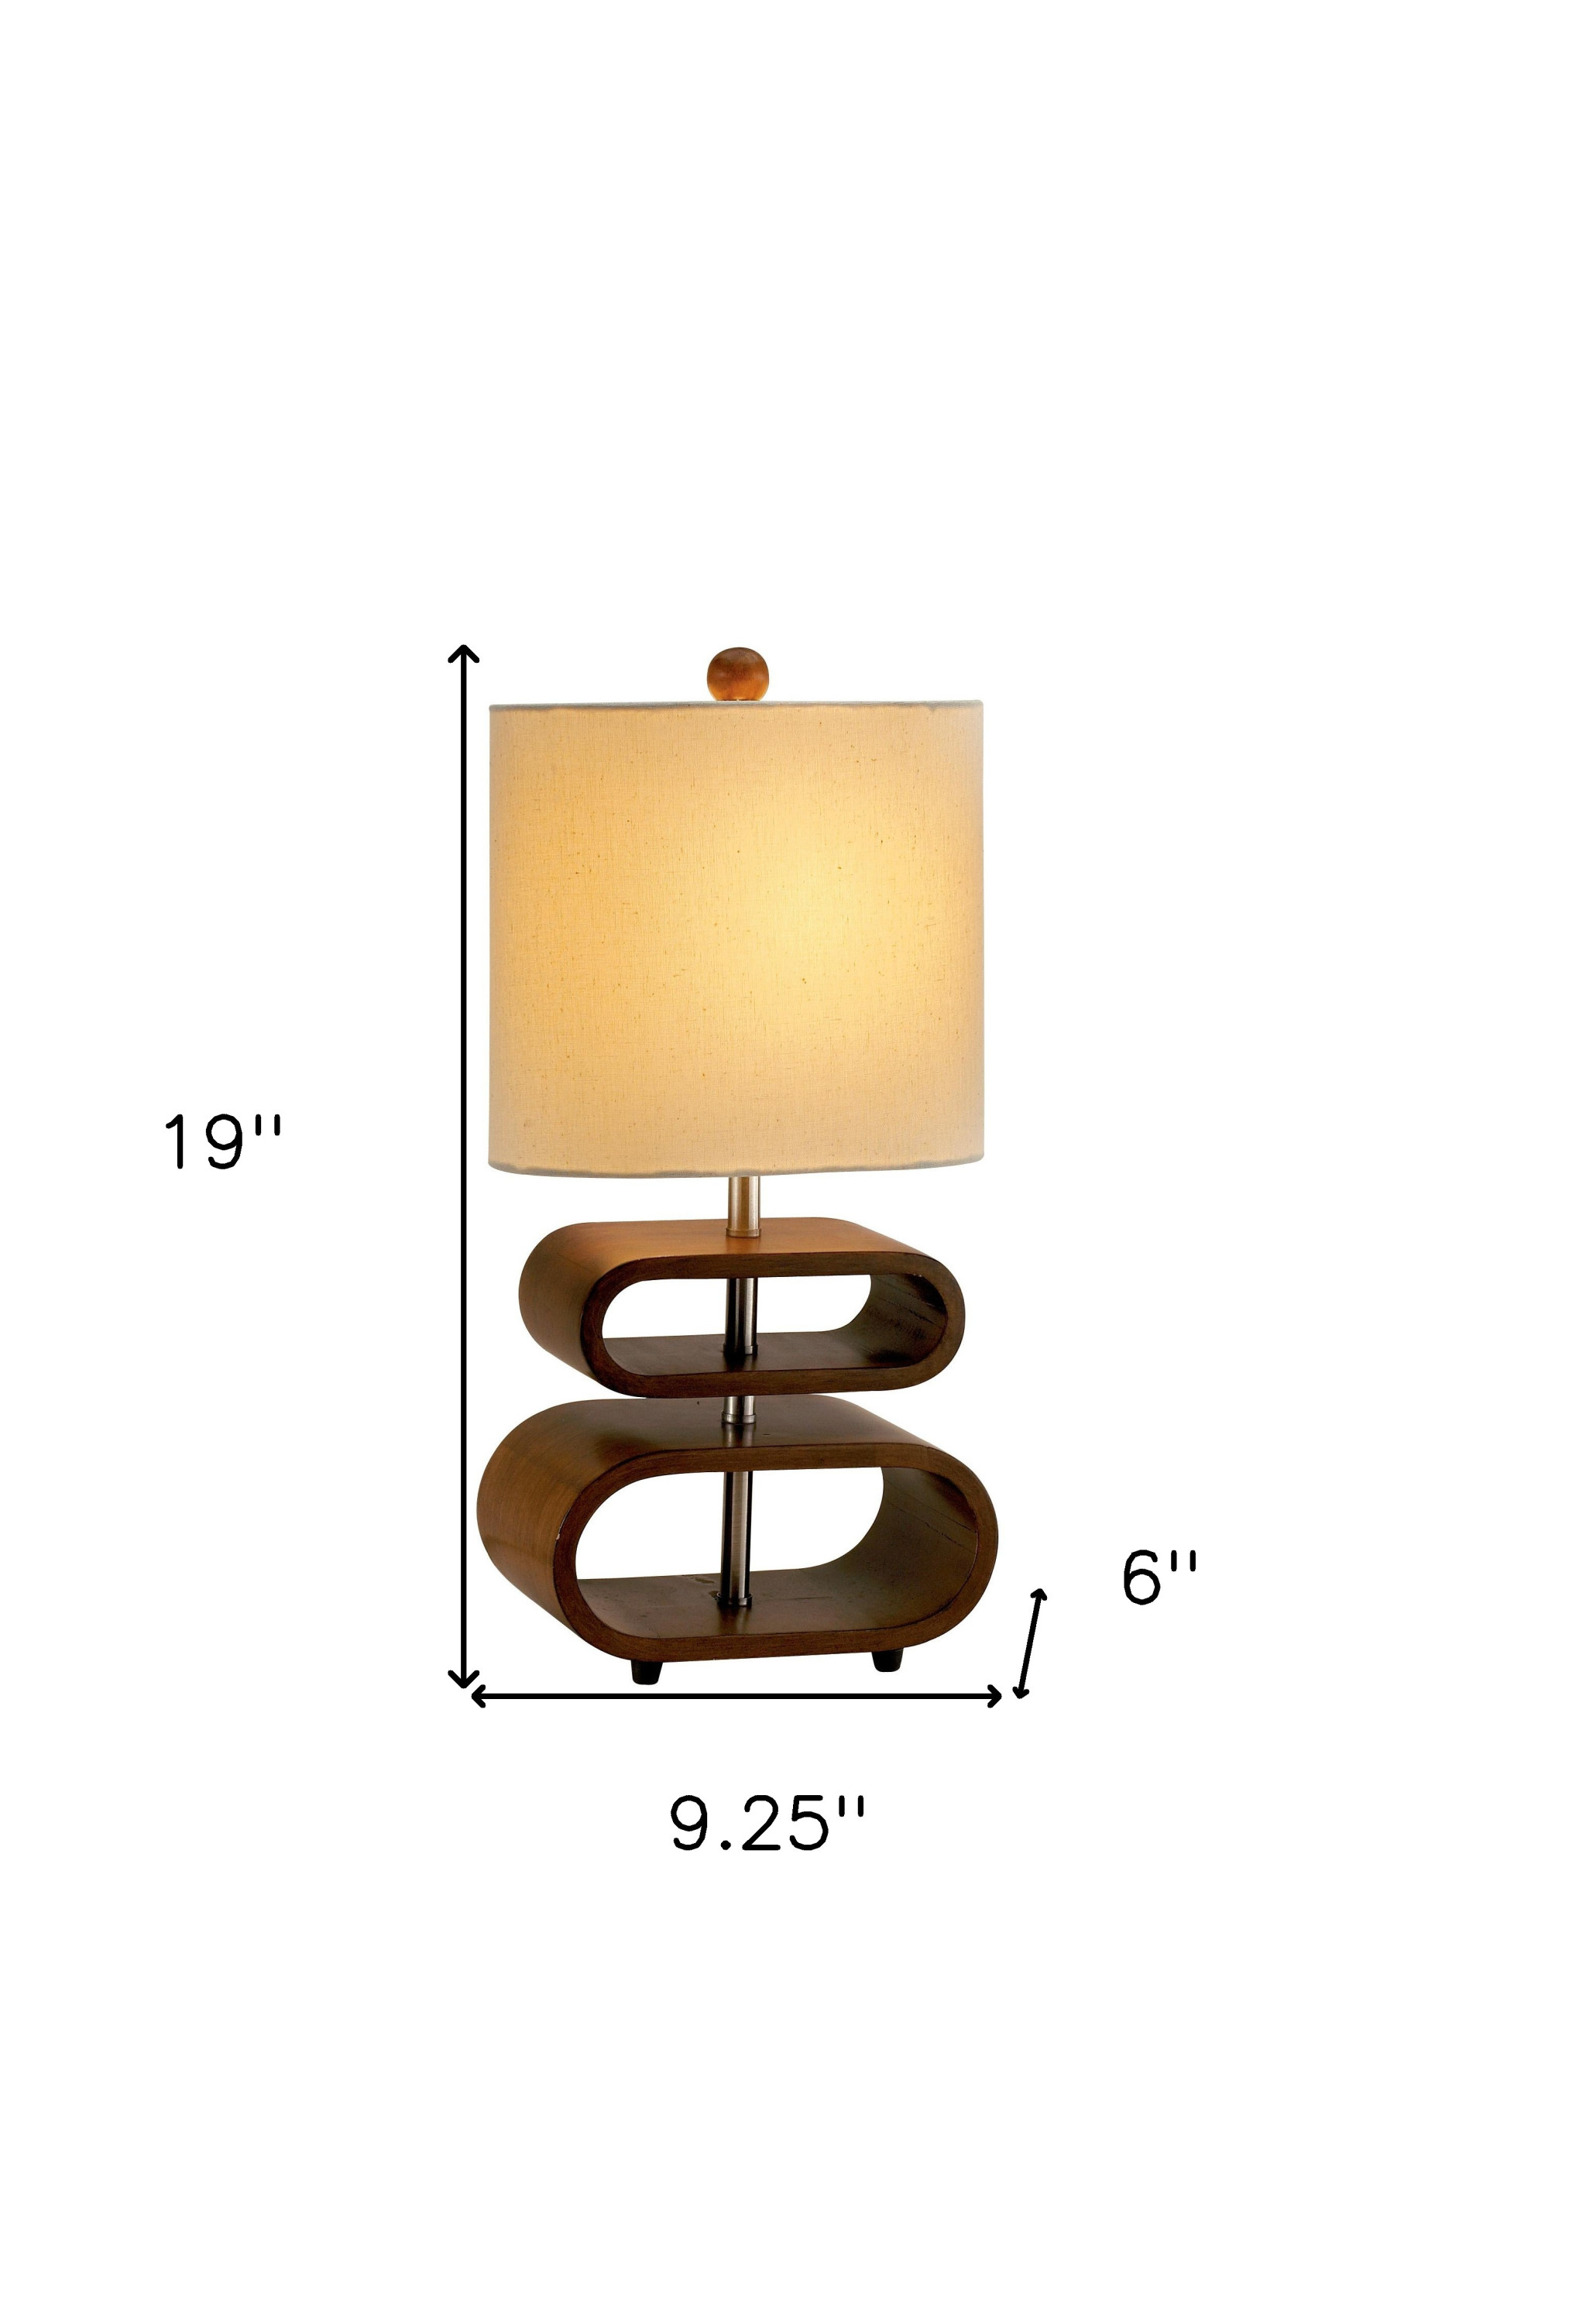 9.25" X 6" X 19.5" Walnut Wood Table Lamp